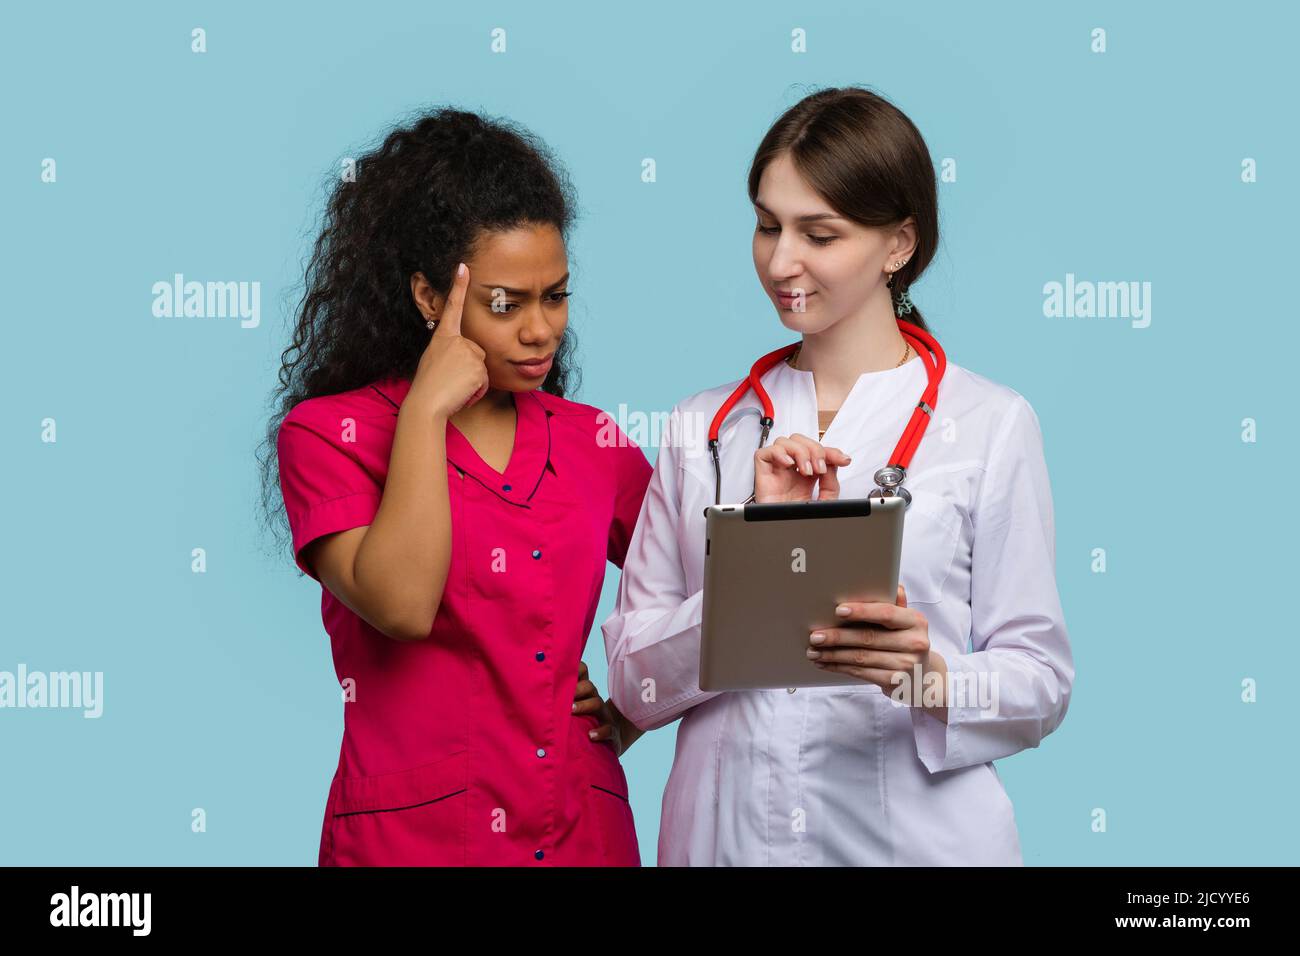 La femme caucasienne GP et la pensive afro-américaine femme médecin assistant stagiaire regarde la tablette numérique sur Blue Studio Wall. Équipe médicale multiethnique Banque D'Images